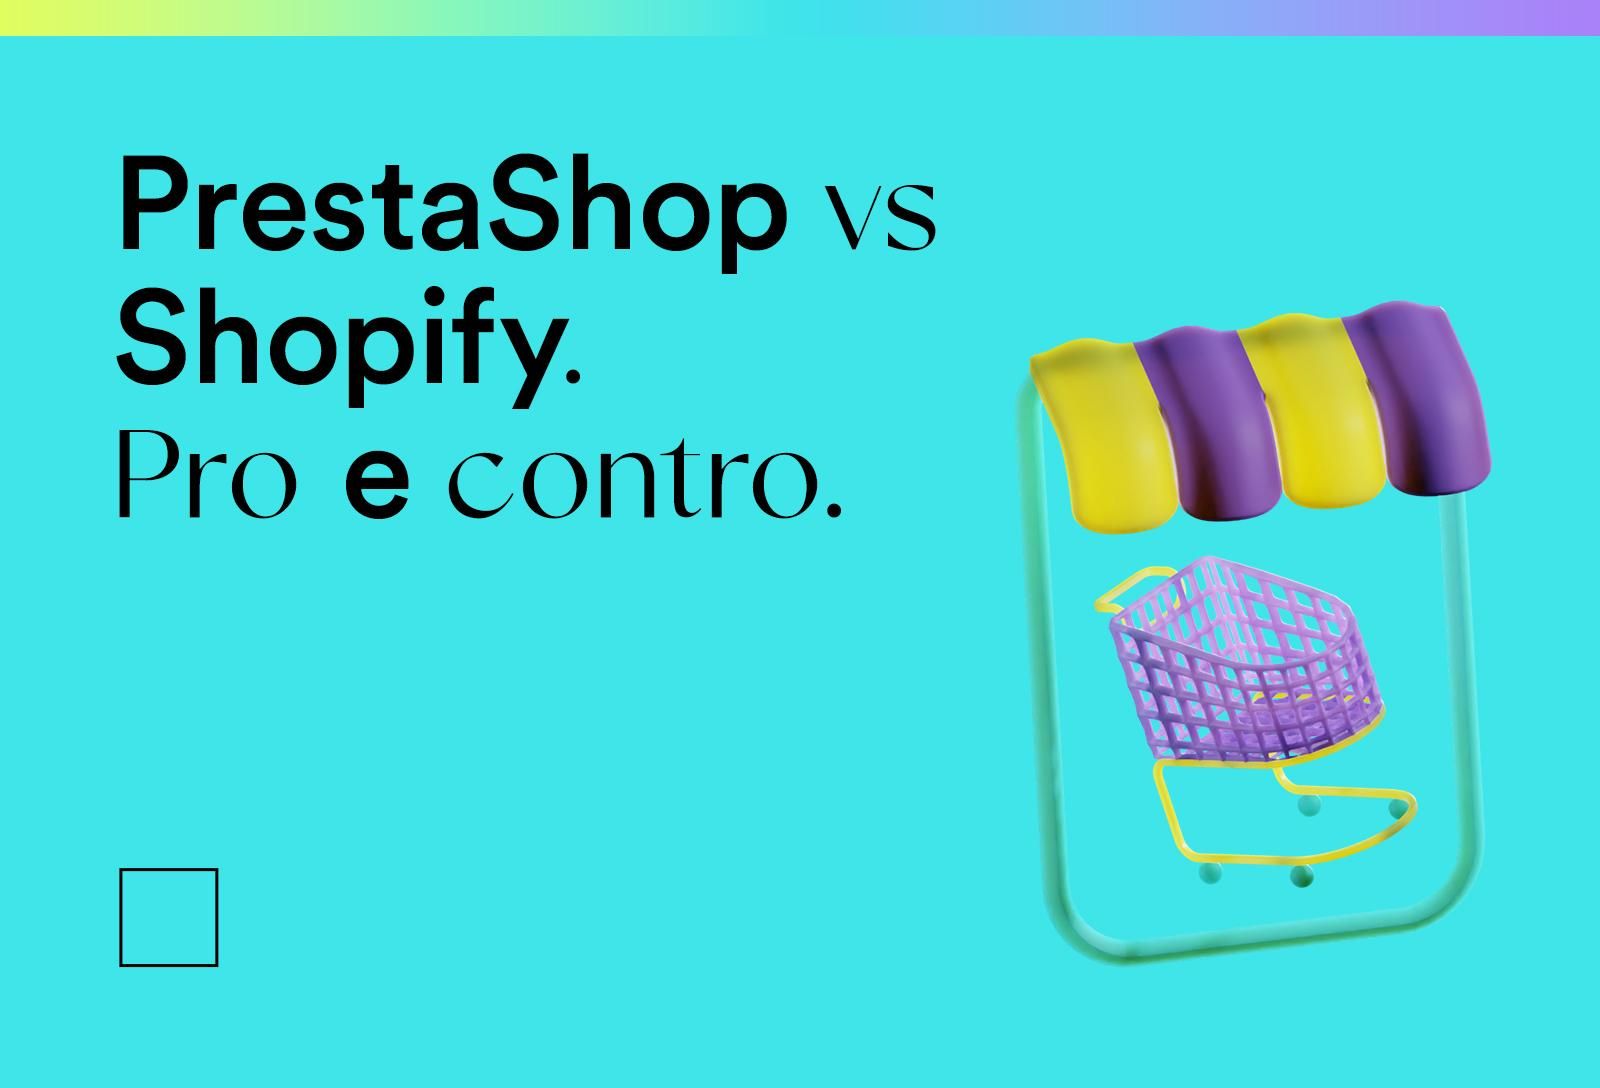 Prestashop vs Shopify